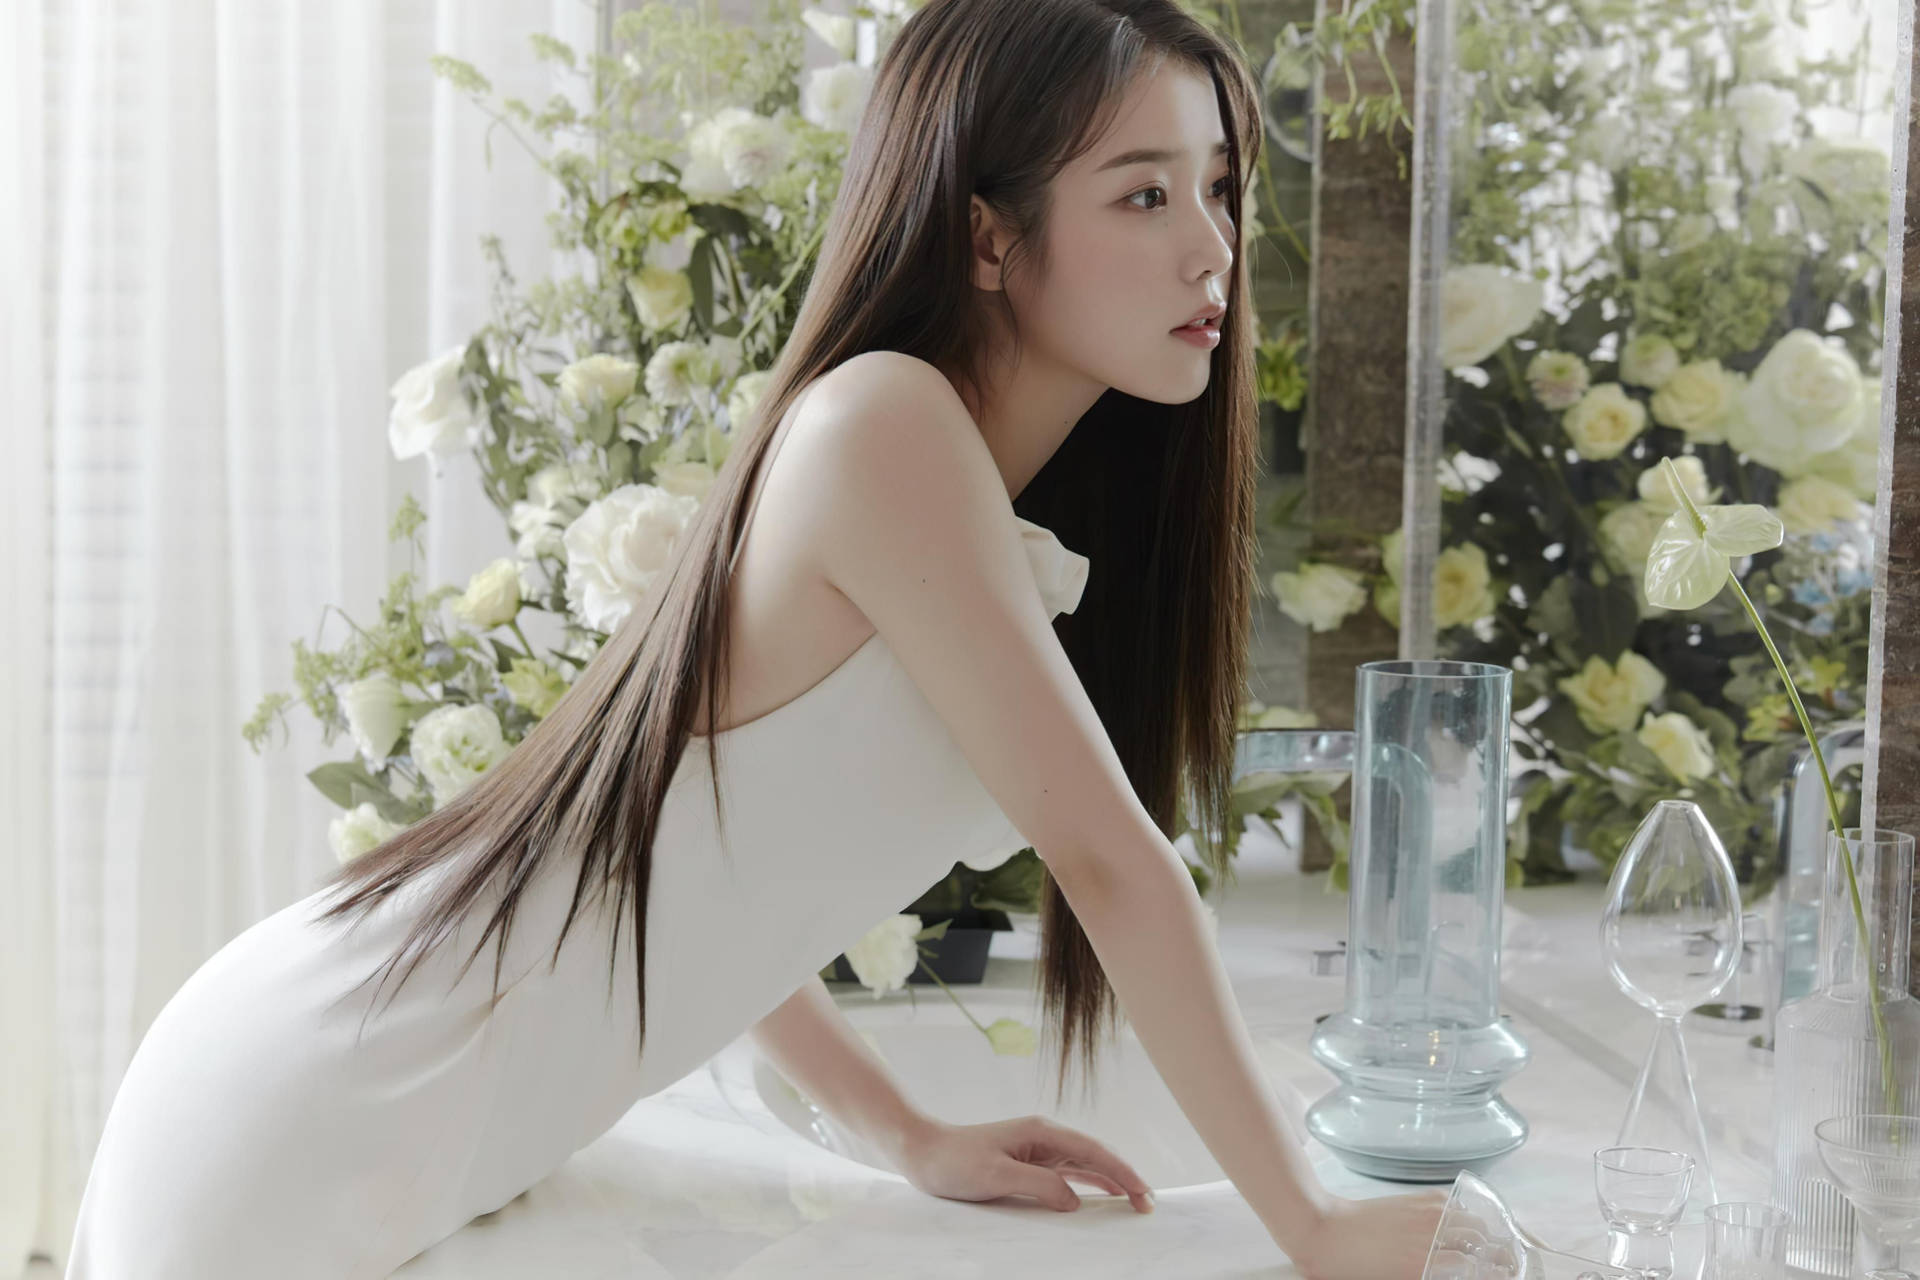 Korean Girl In White With Roses Wallpaper